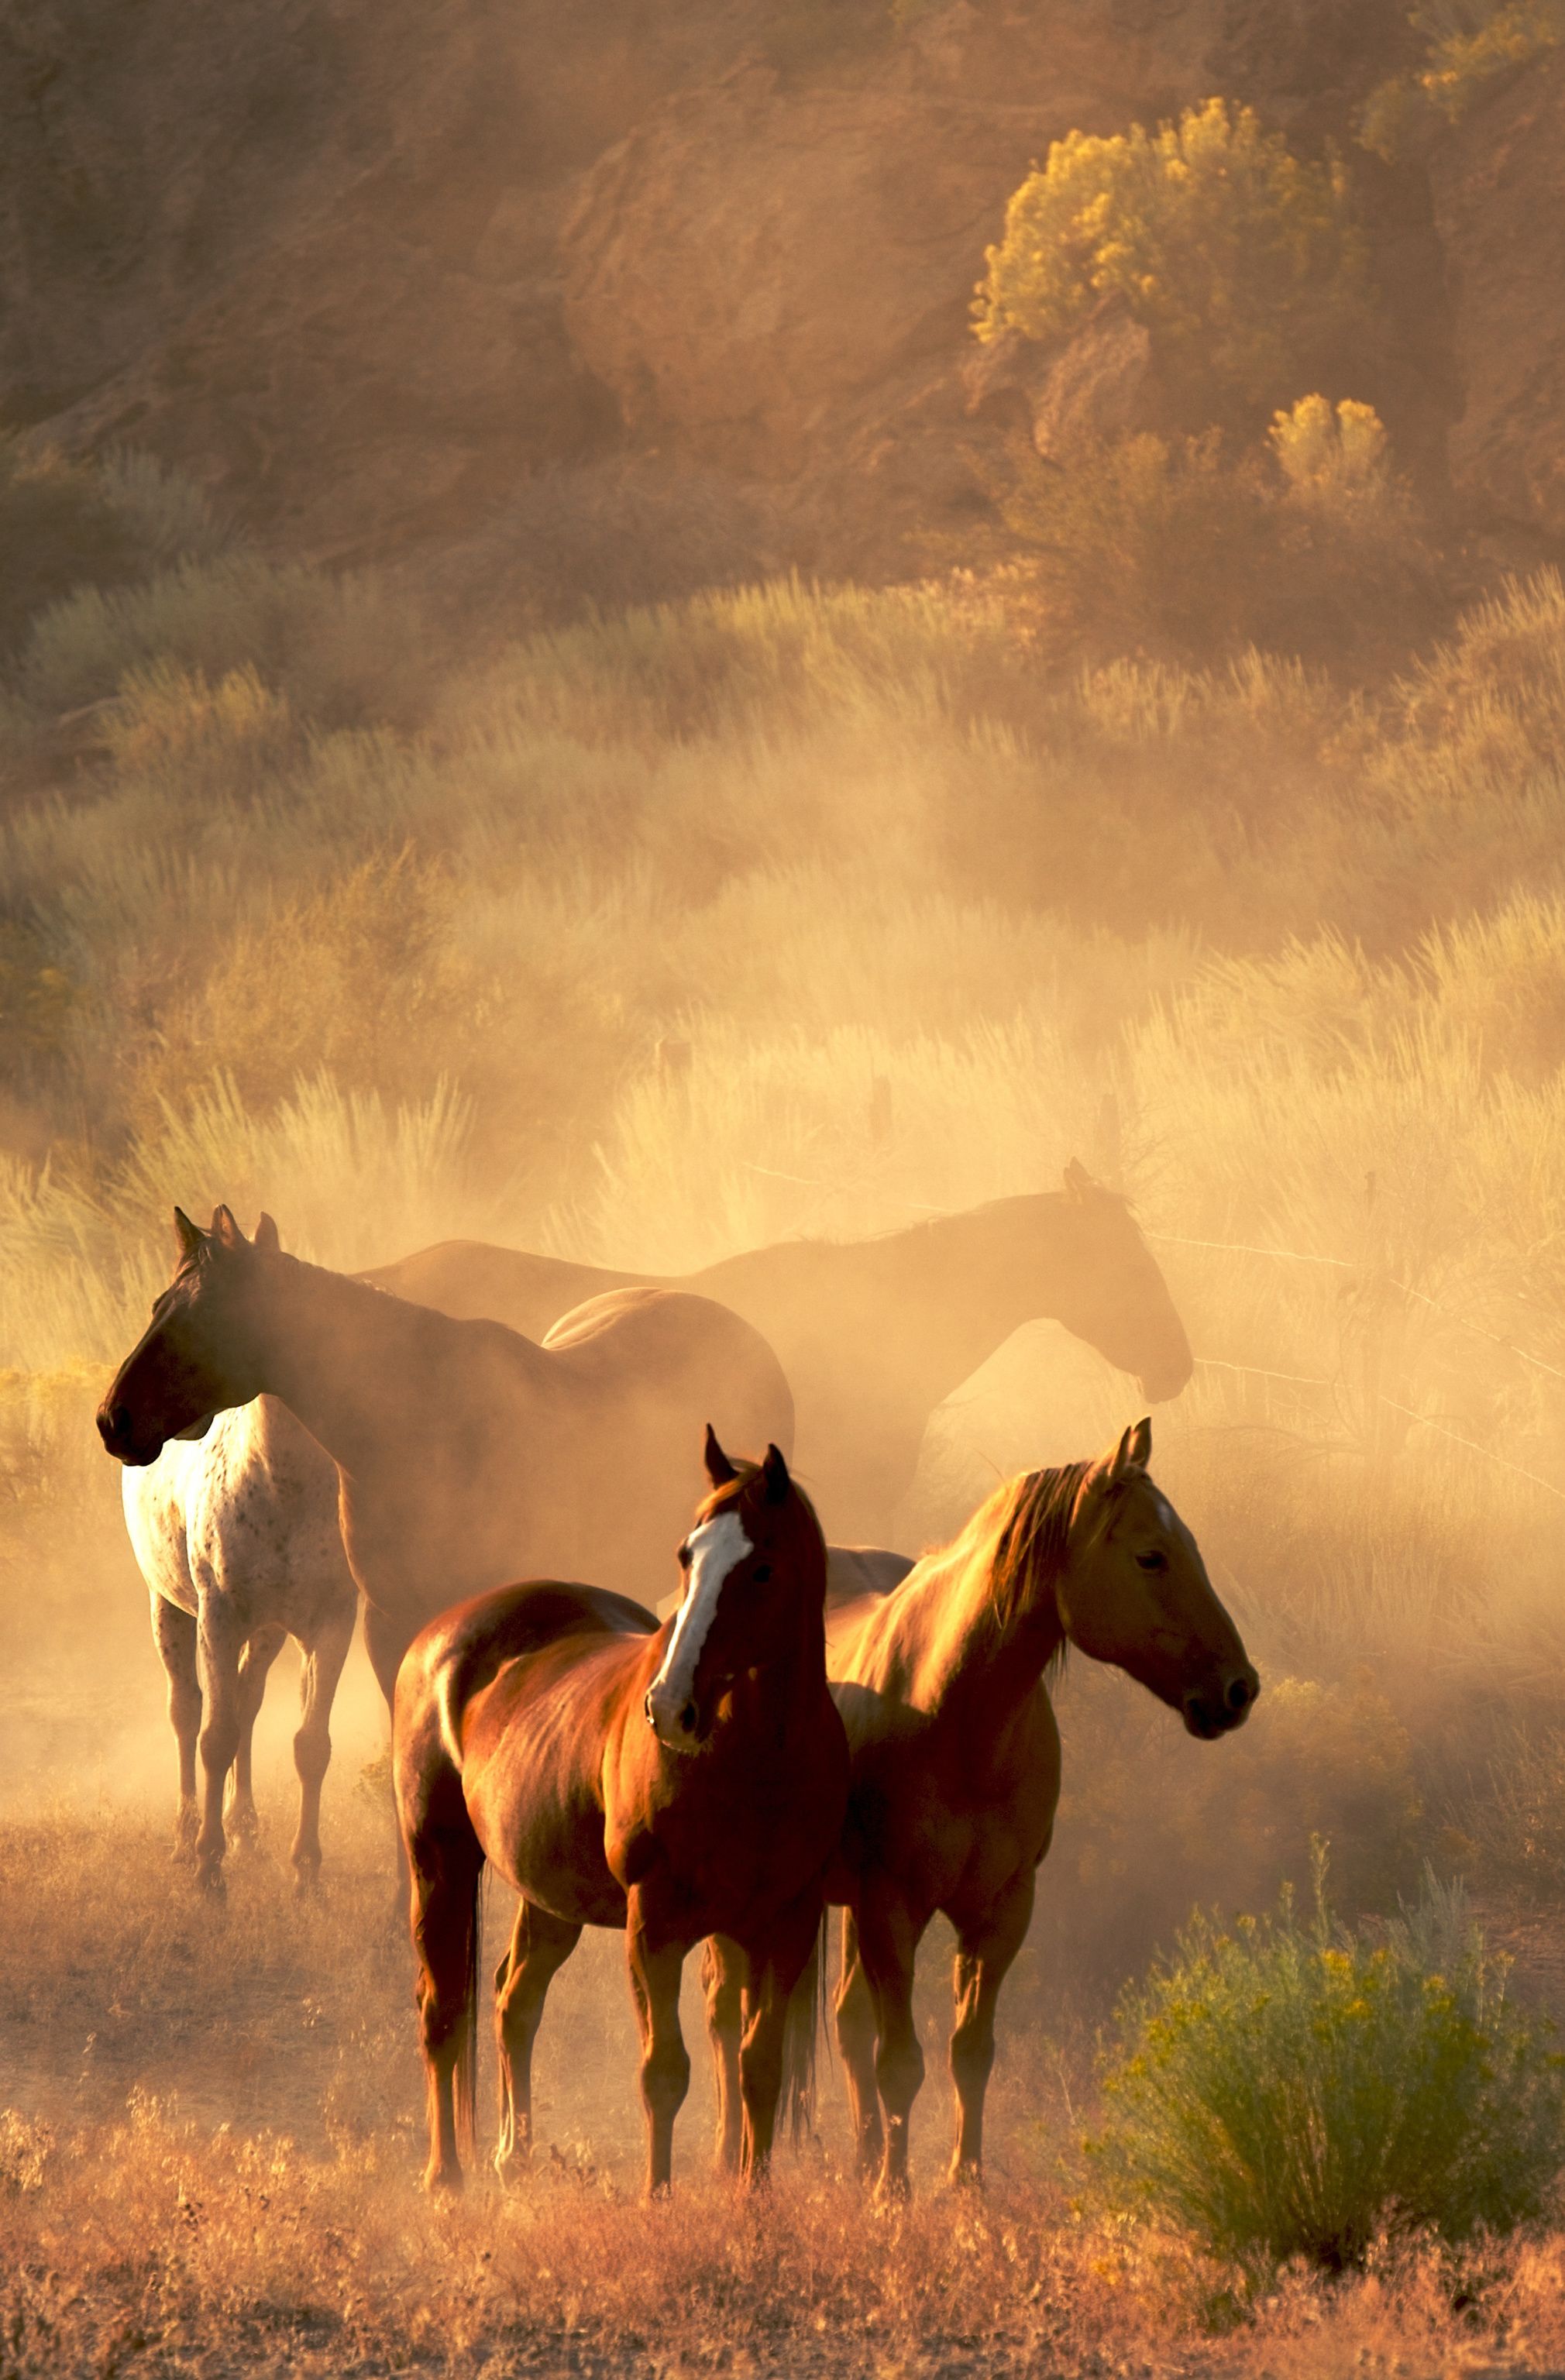 Hình nền ngựa uy phong chắc chắn sẽ khiến bạn trầm trồ với vẻ đẹp cổ điển và sang trọng của chúng. Hãy sử dụng những hình ảnh này để thể hiện cá tính và tham vọng của bạn.